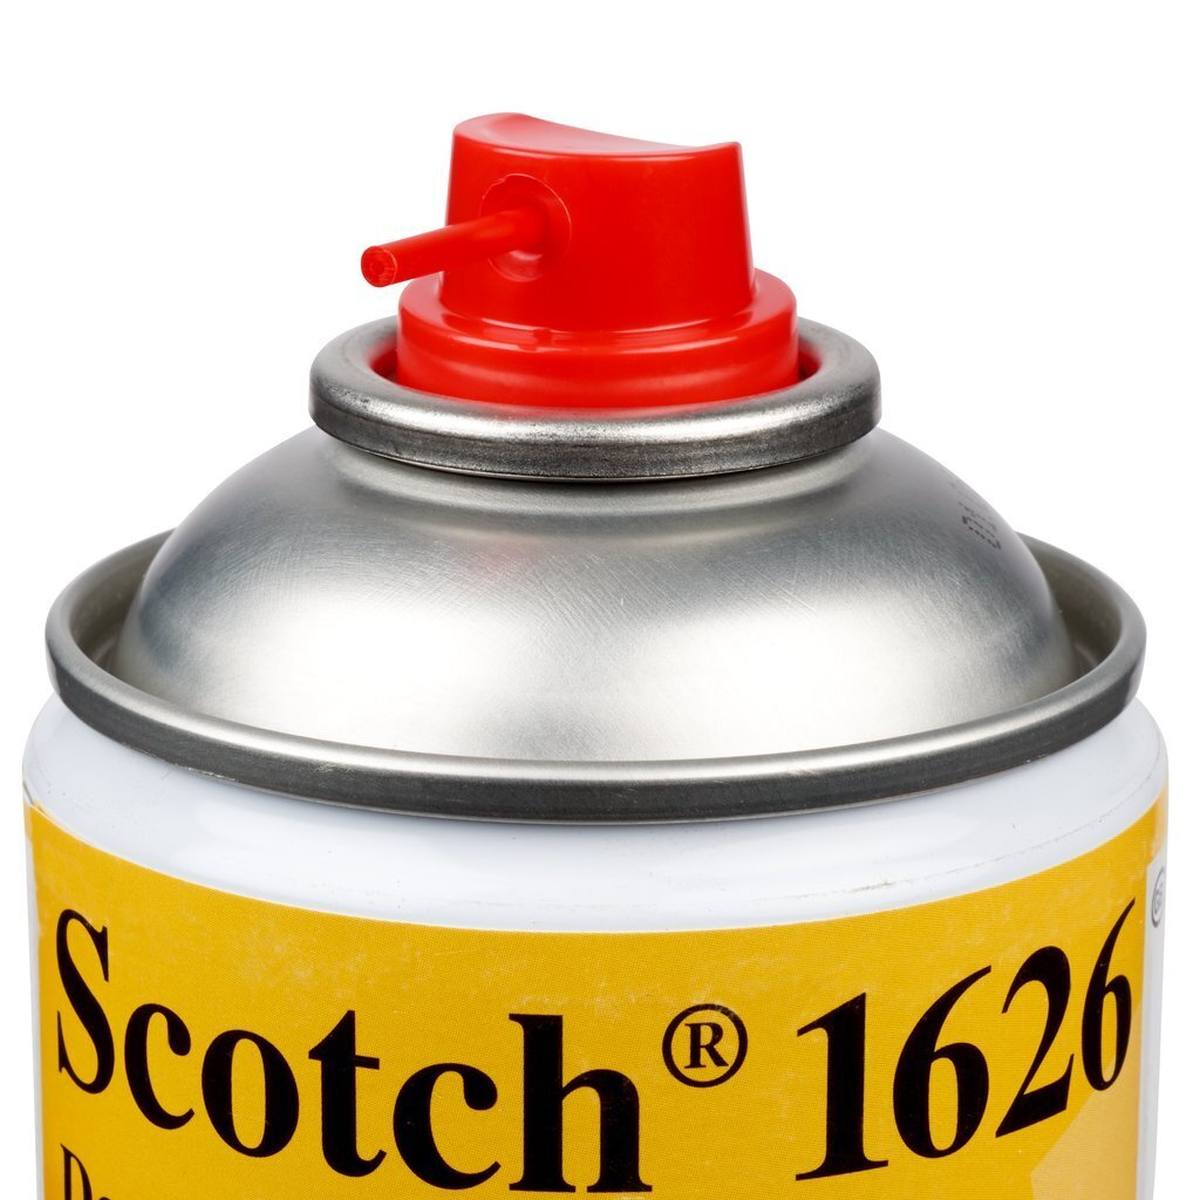 3M Scotch 1626 Spray detergente e sgrassante, 400 ml